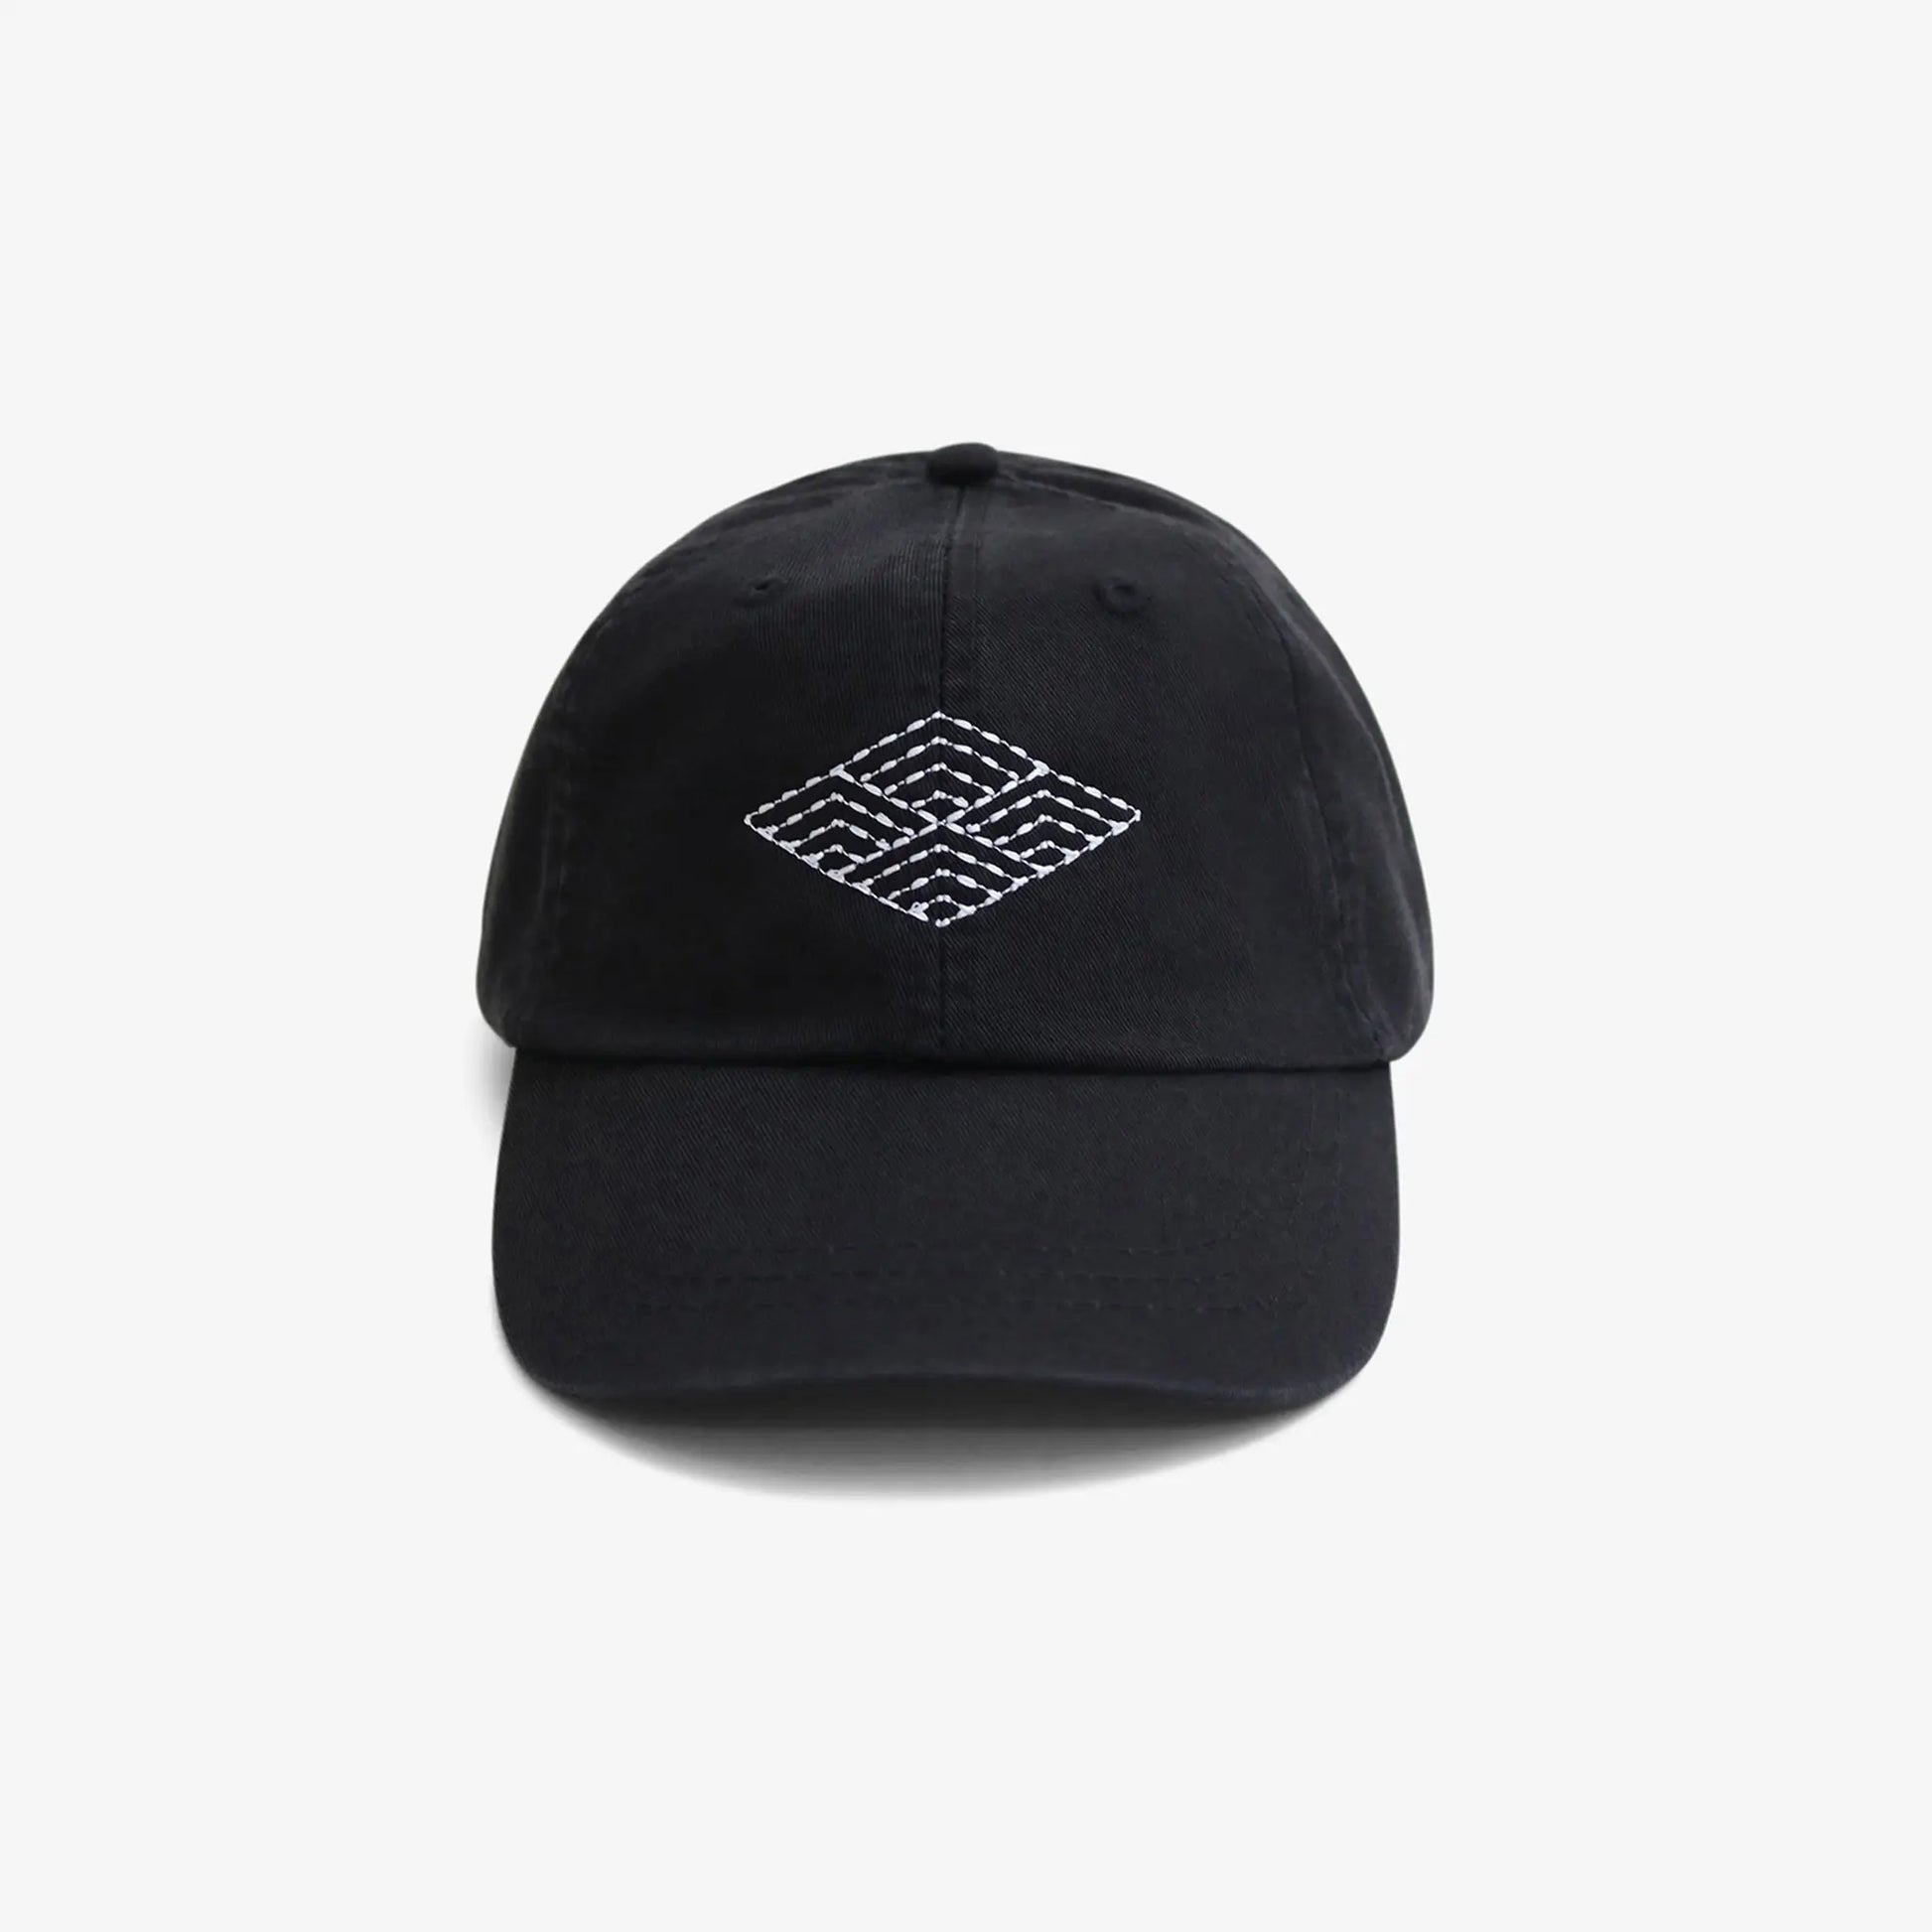 Sashiko Hat Black Japanese Design Cap